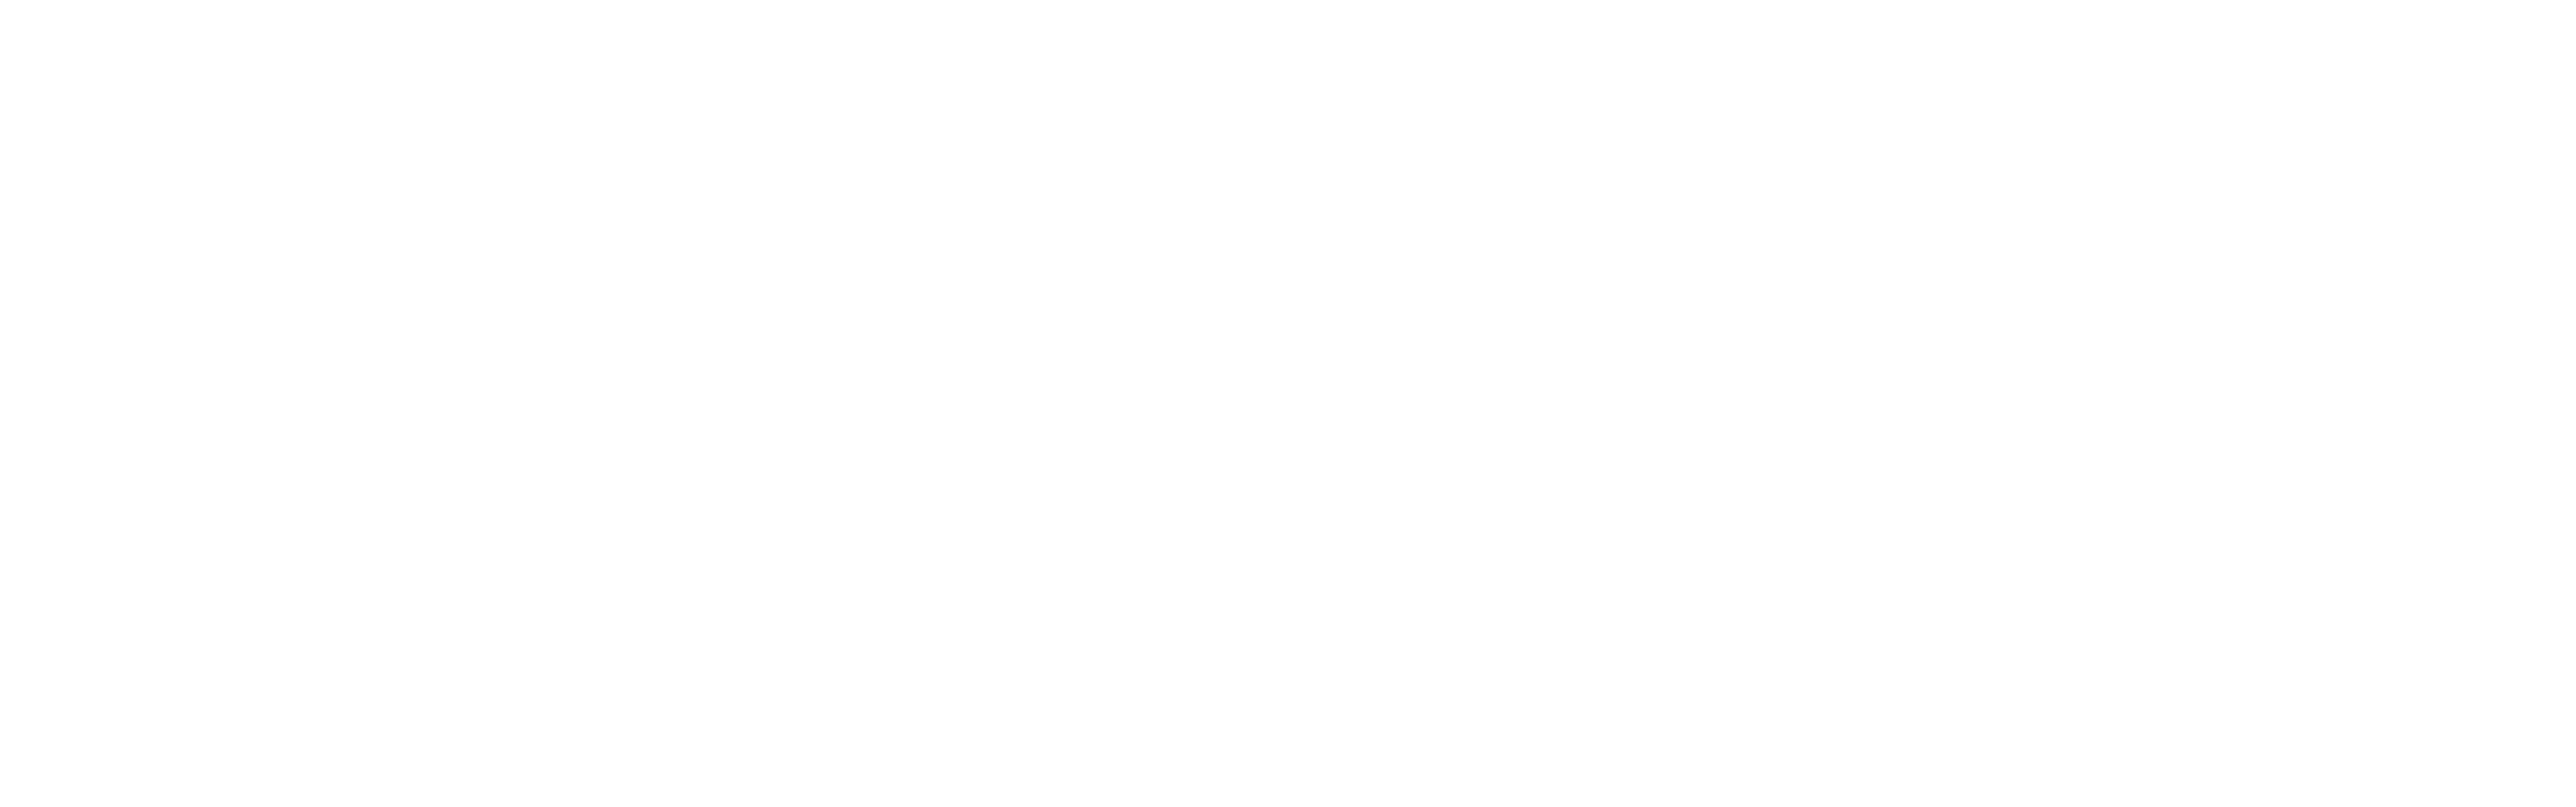 Academy Aroa Fernández